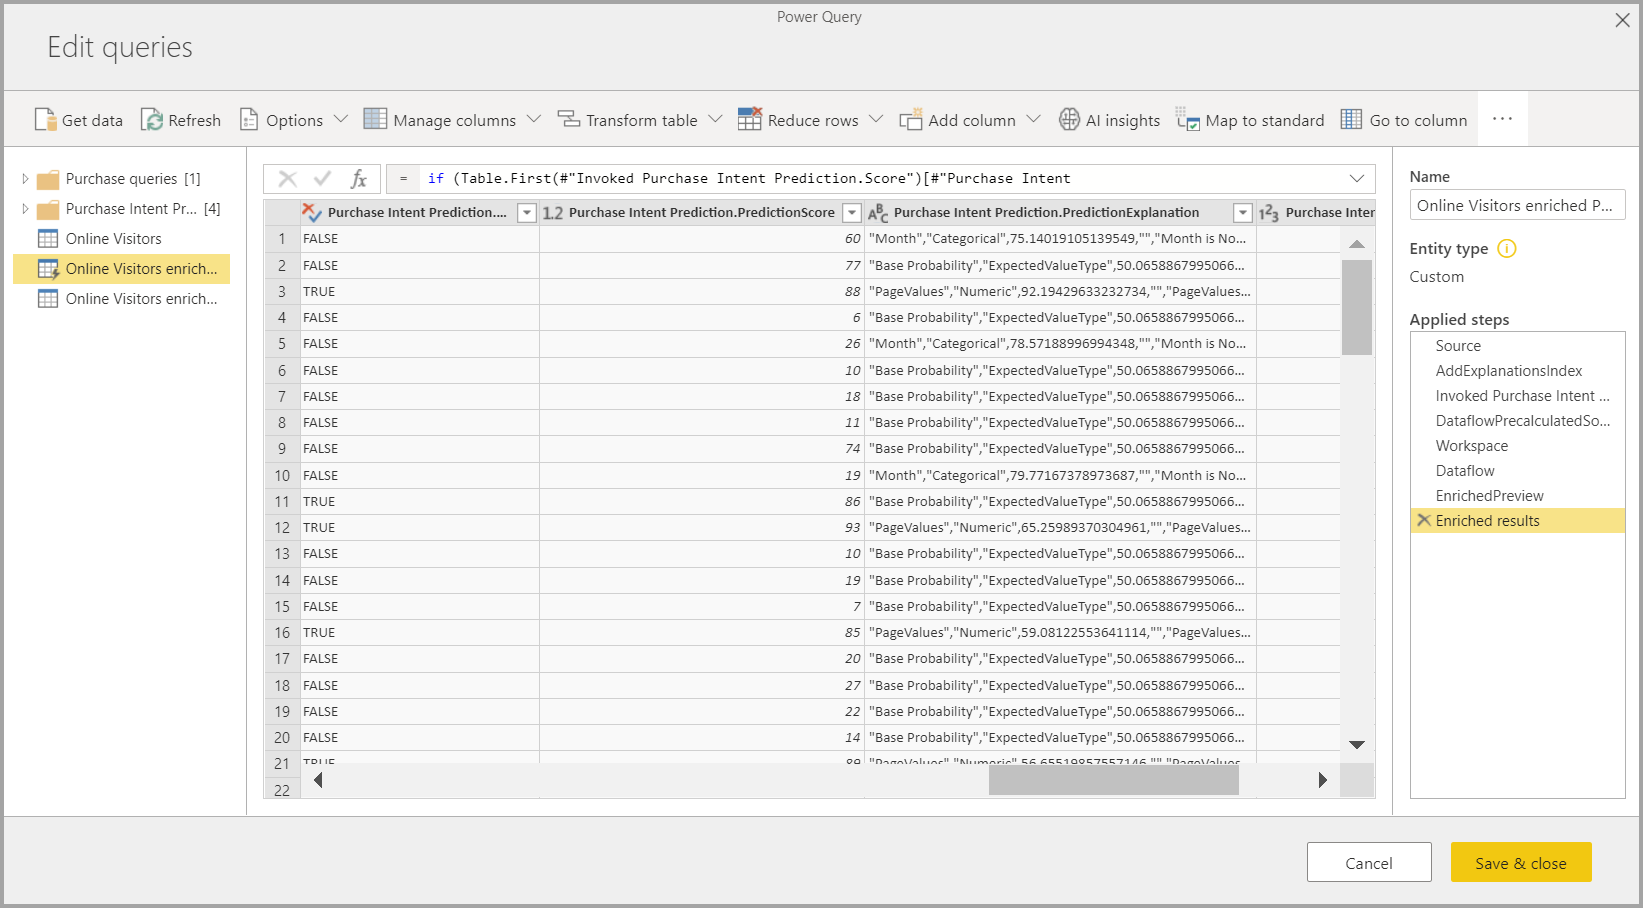 AutoML sonuçlarını gösteren Power Query'nin ekran görüntüsü.